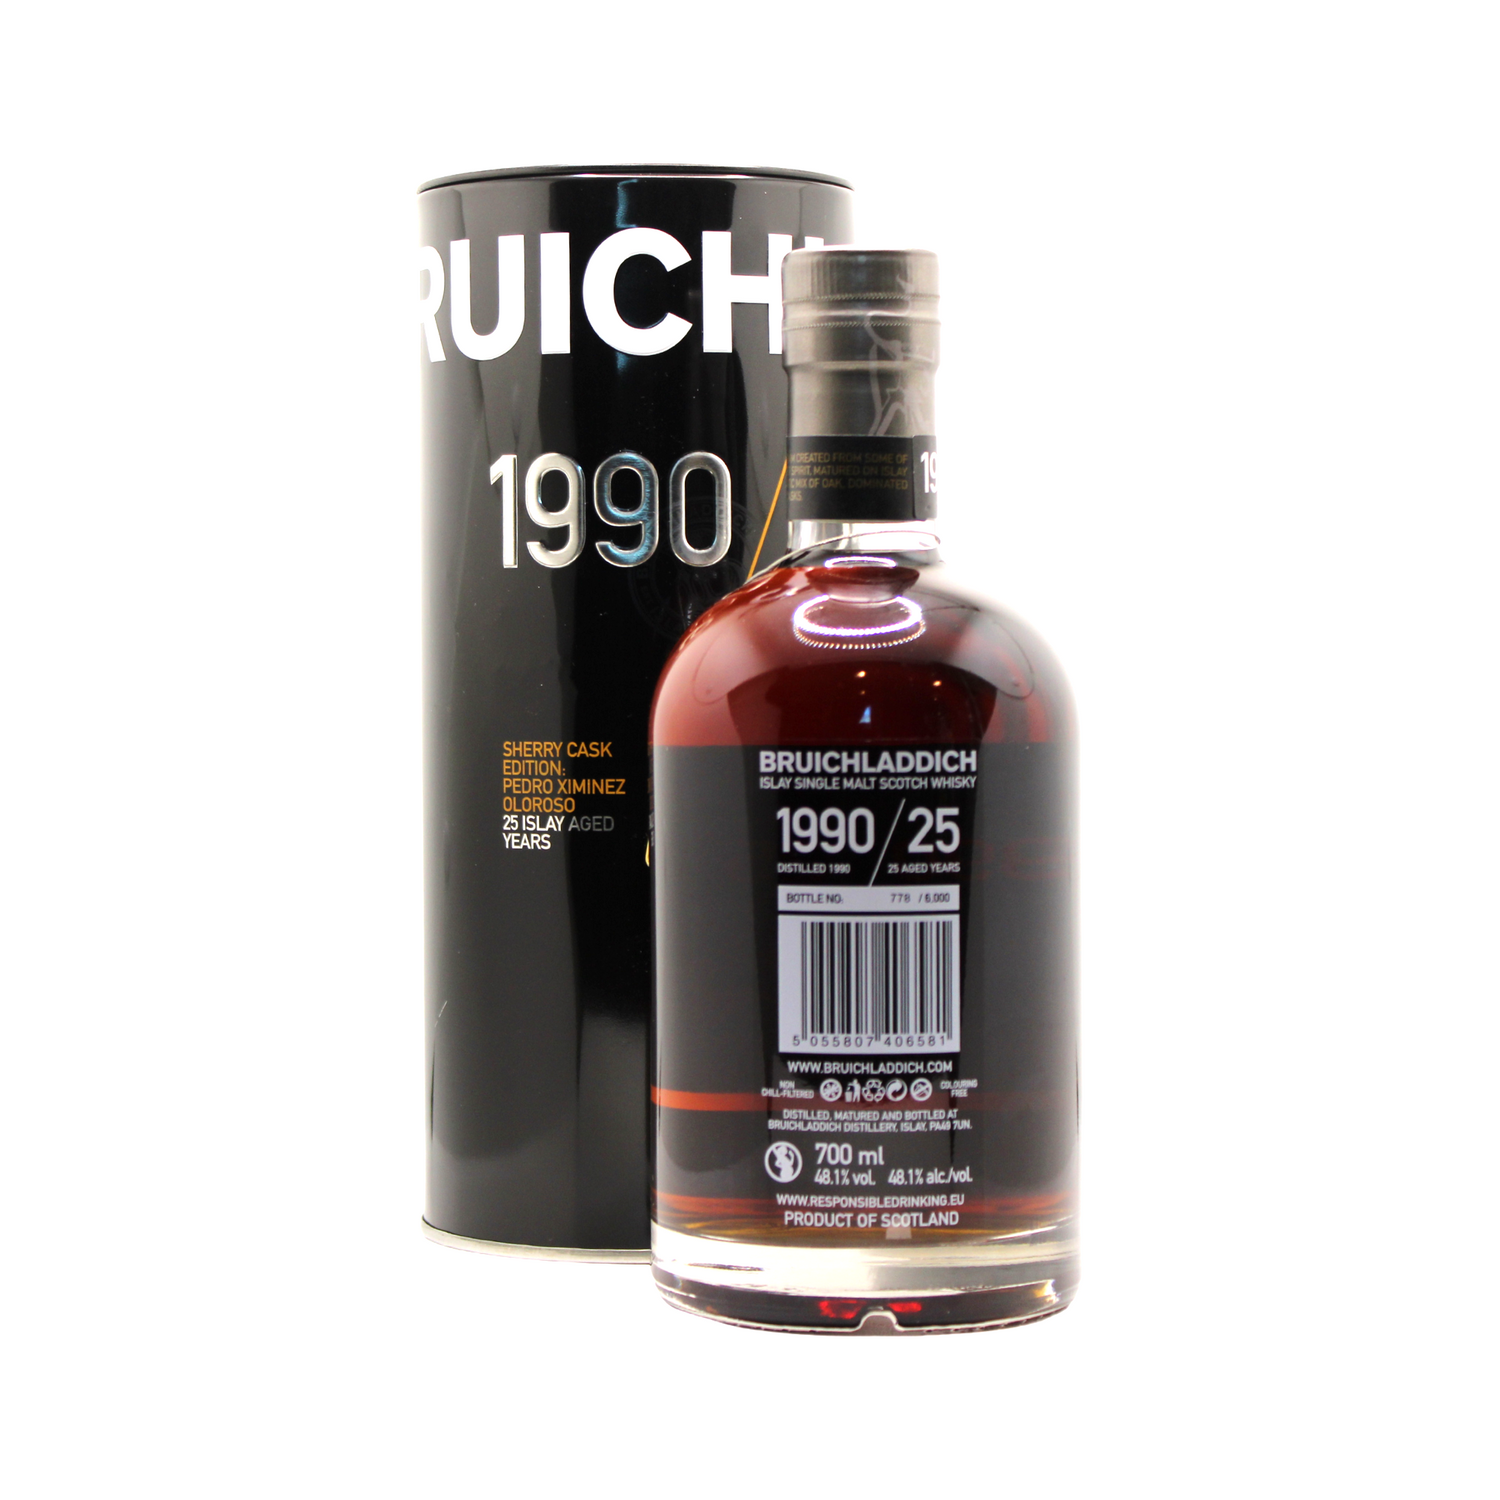 Bruichladdich 25 Y/O Sherry Cask 1990/2016 Single Malt Scotch Whisky